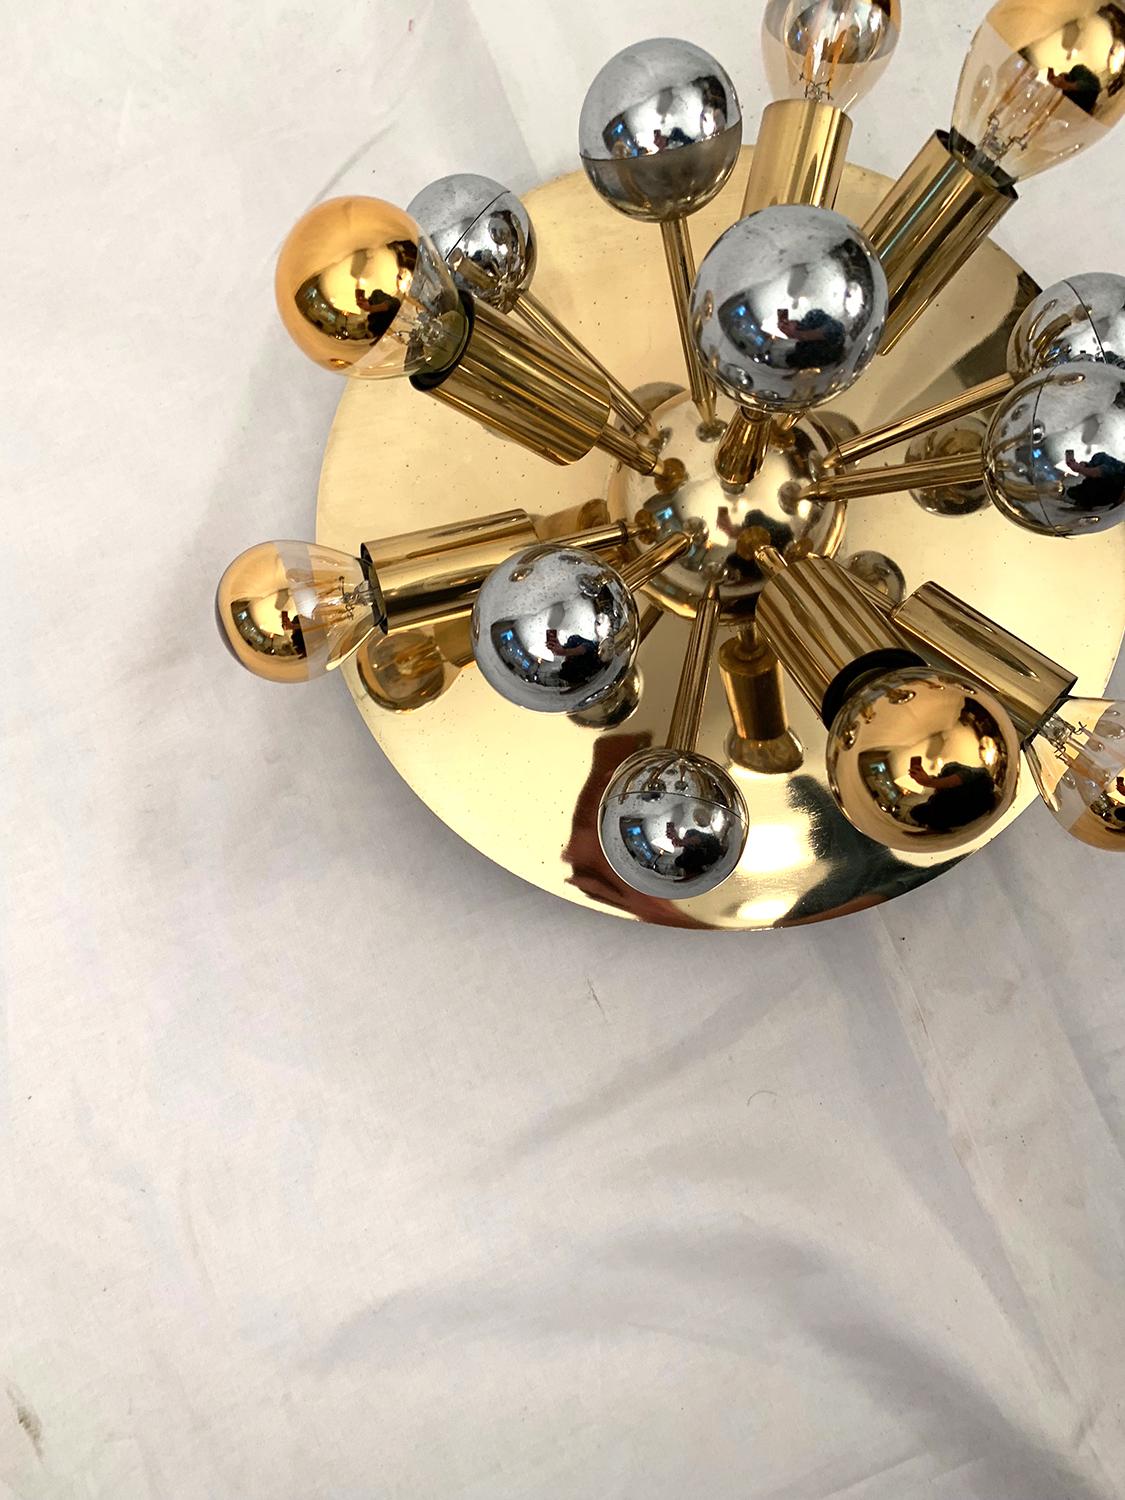 Very nice golden metal ceiling lamp finished with golden and silver plastic balls, 1970s.

Très chouette plafonnier en métal doré terminé par des boules plastique dorées et argentées, 1970s.